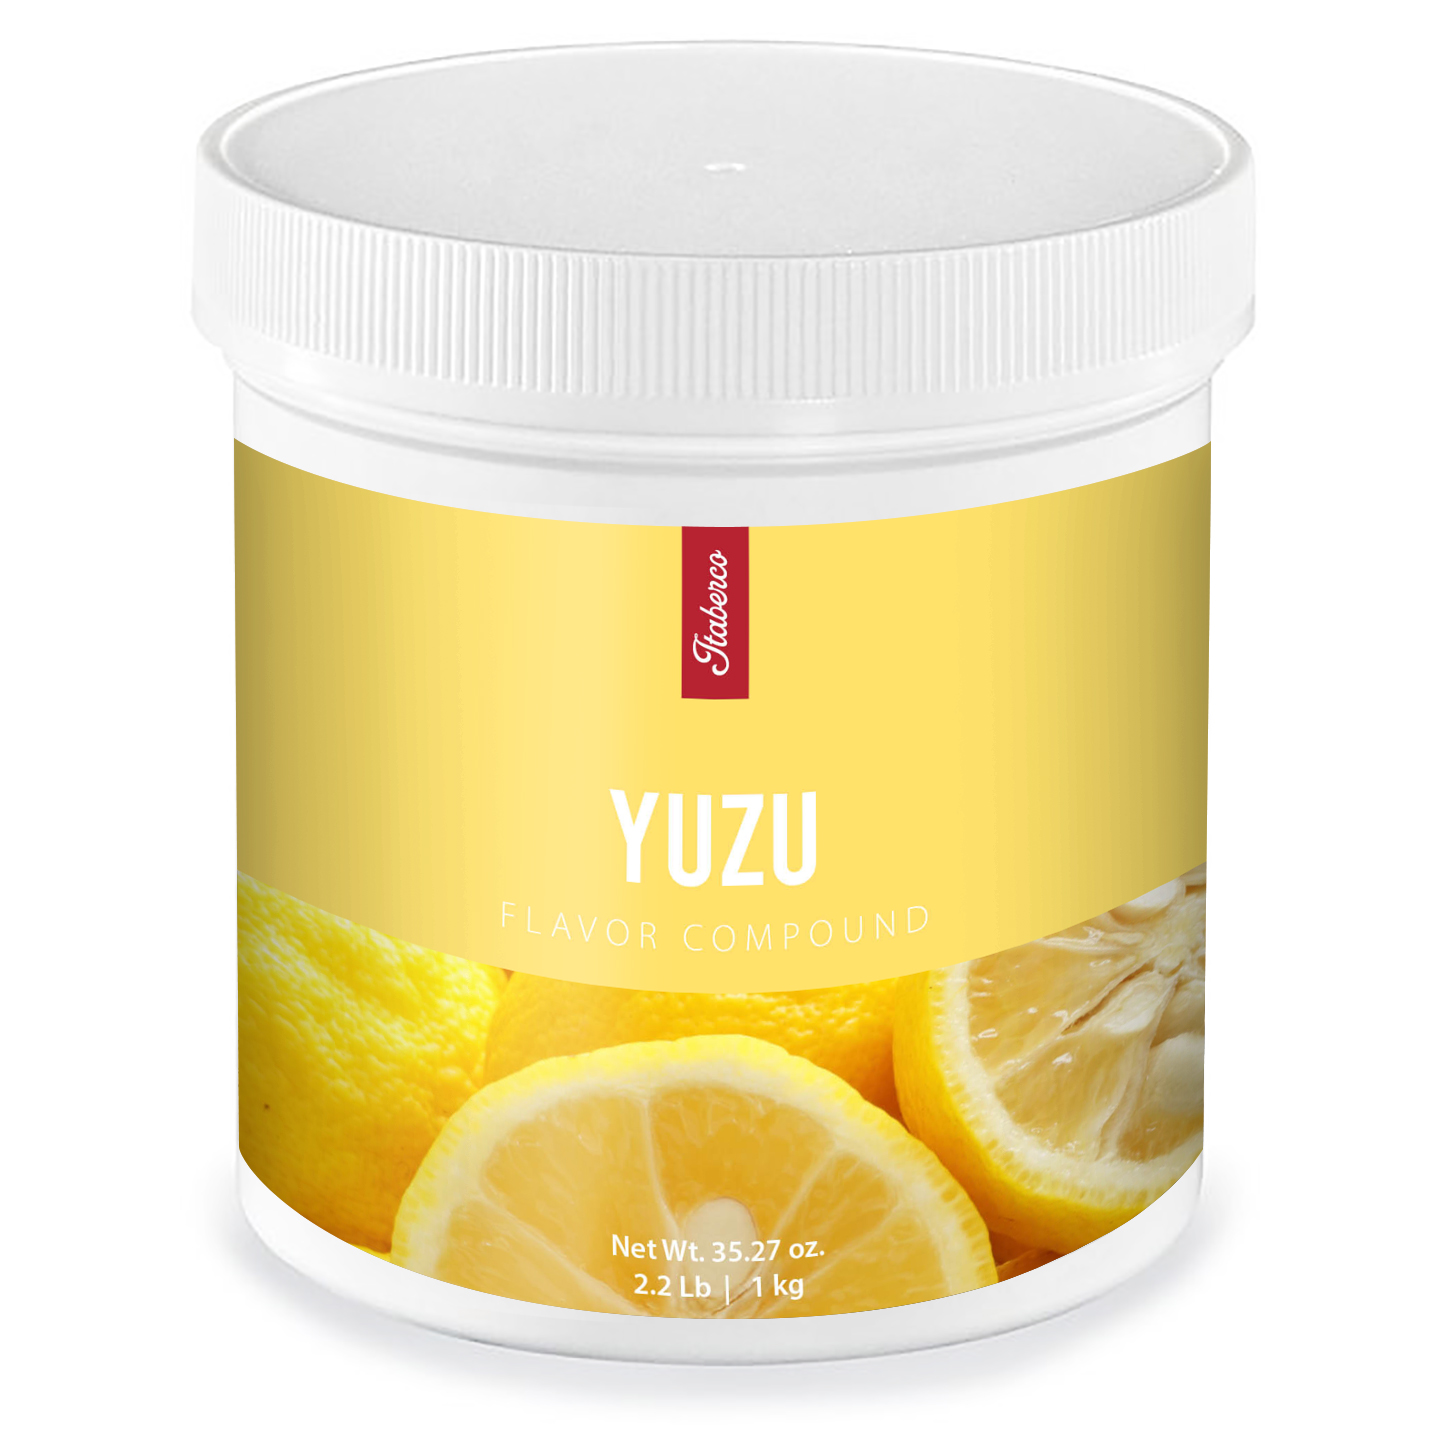 Yuzu Flavor Compound